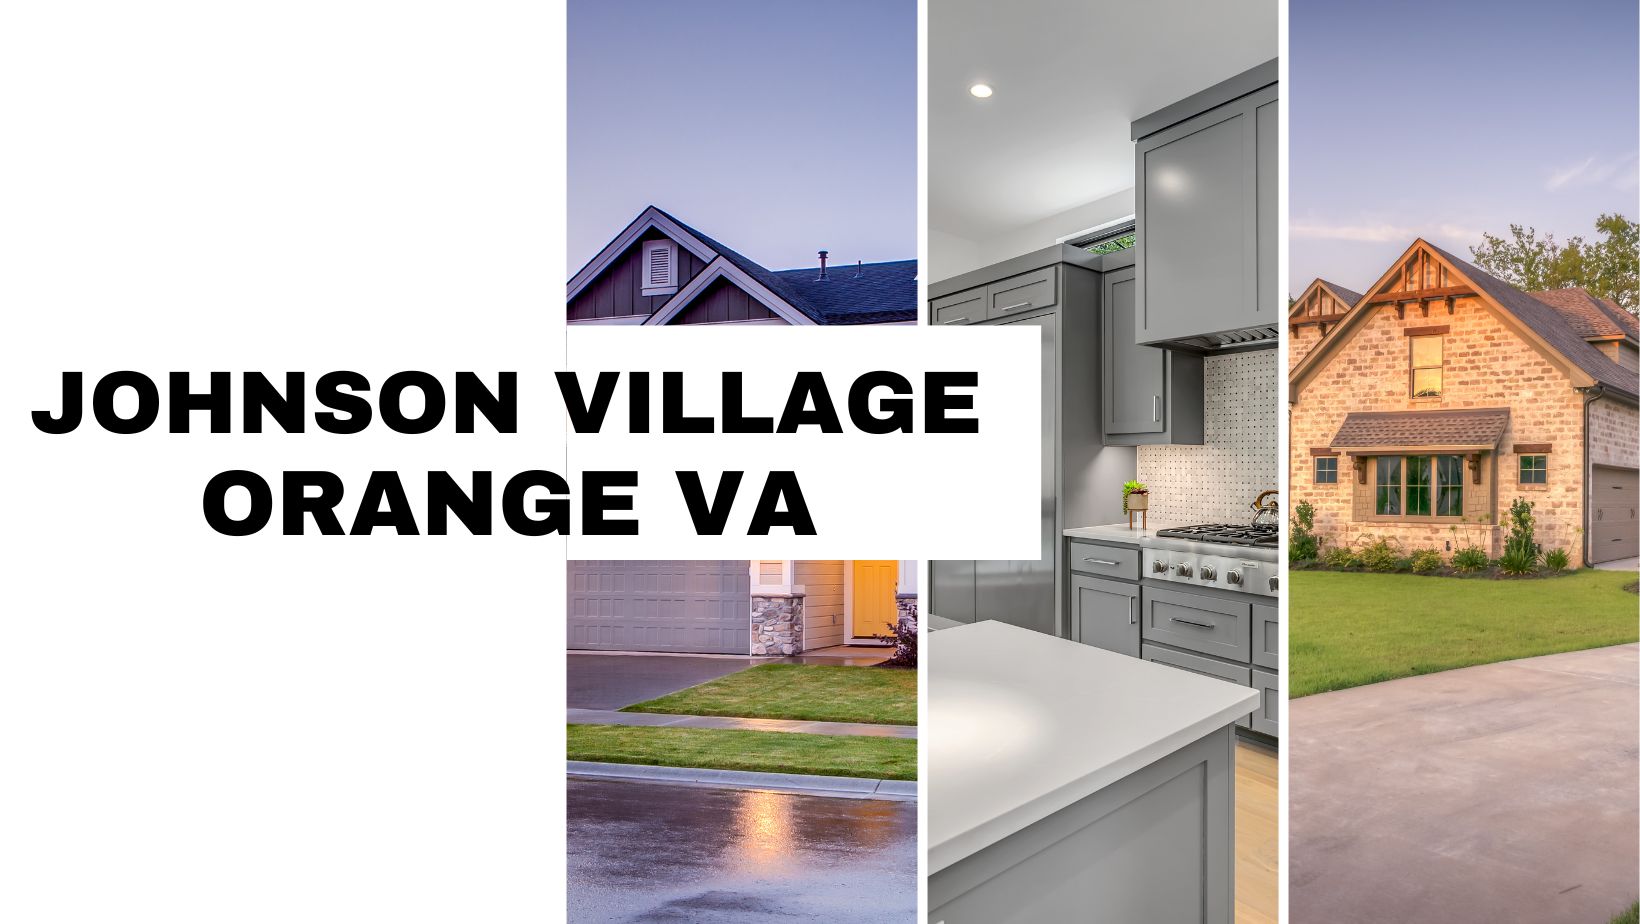 Johnson Village Orange VA Neighborhood